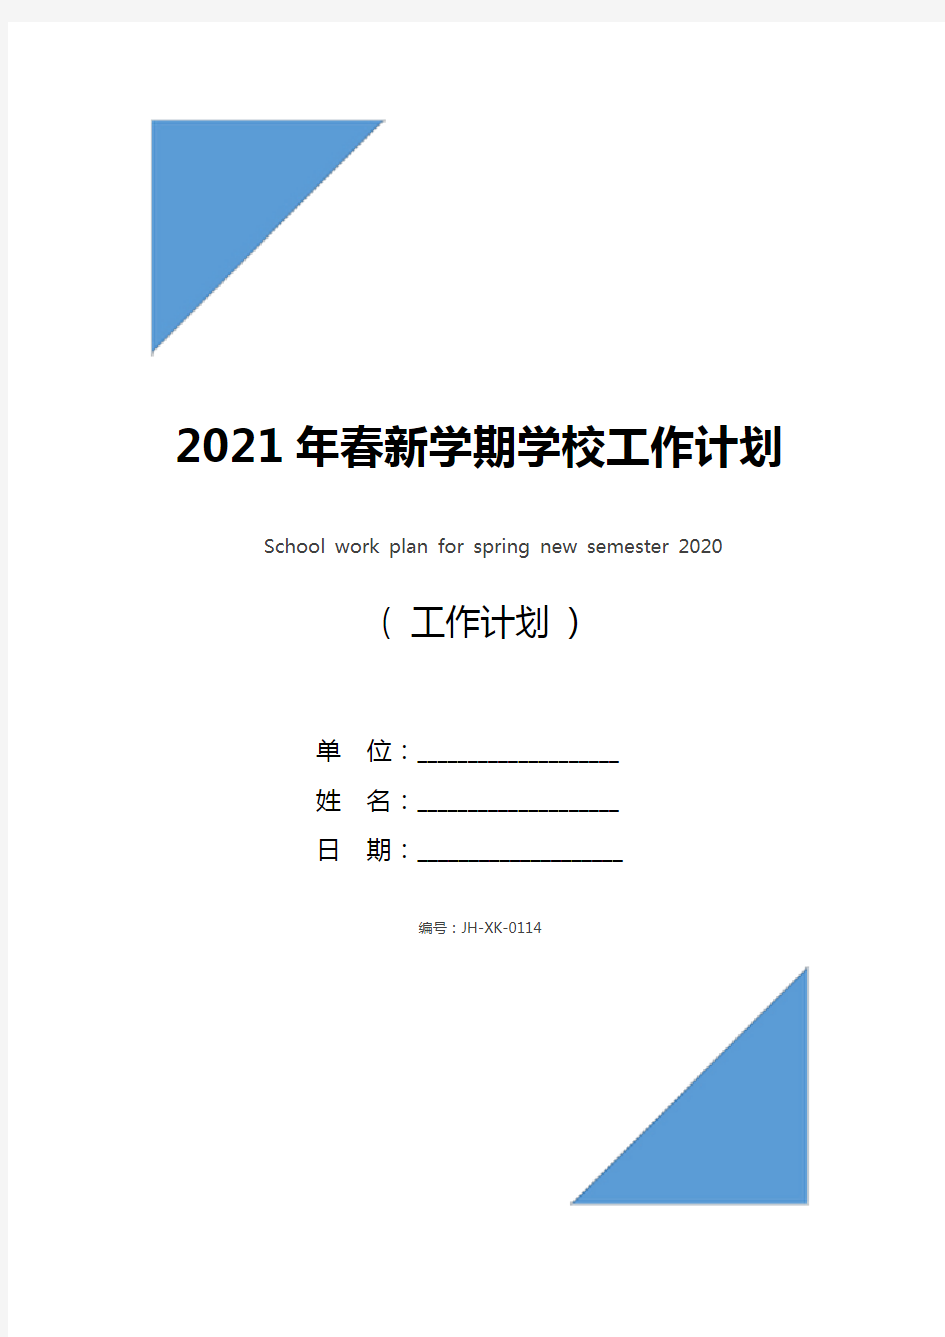 2021年春新学期学校工作计划(通用版)